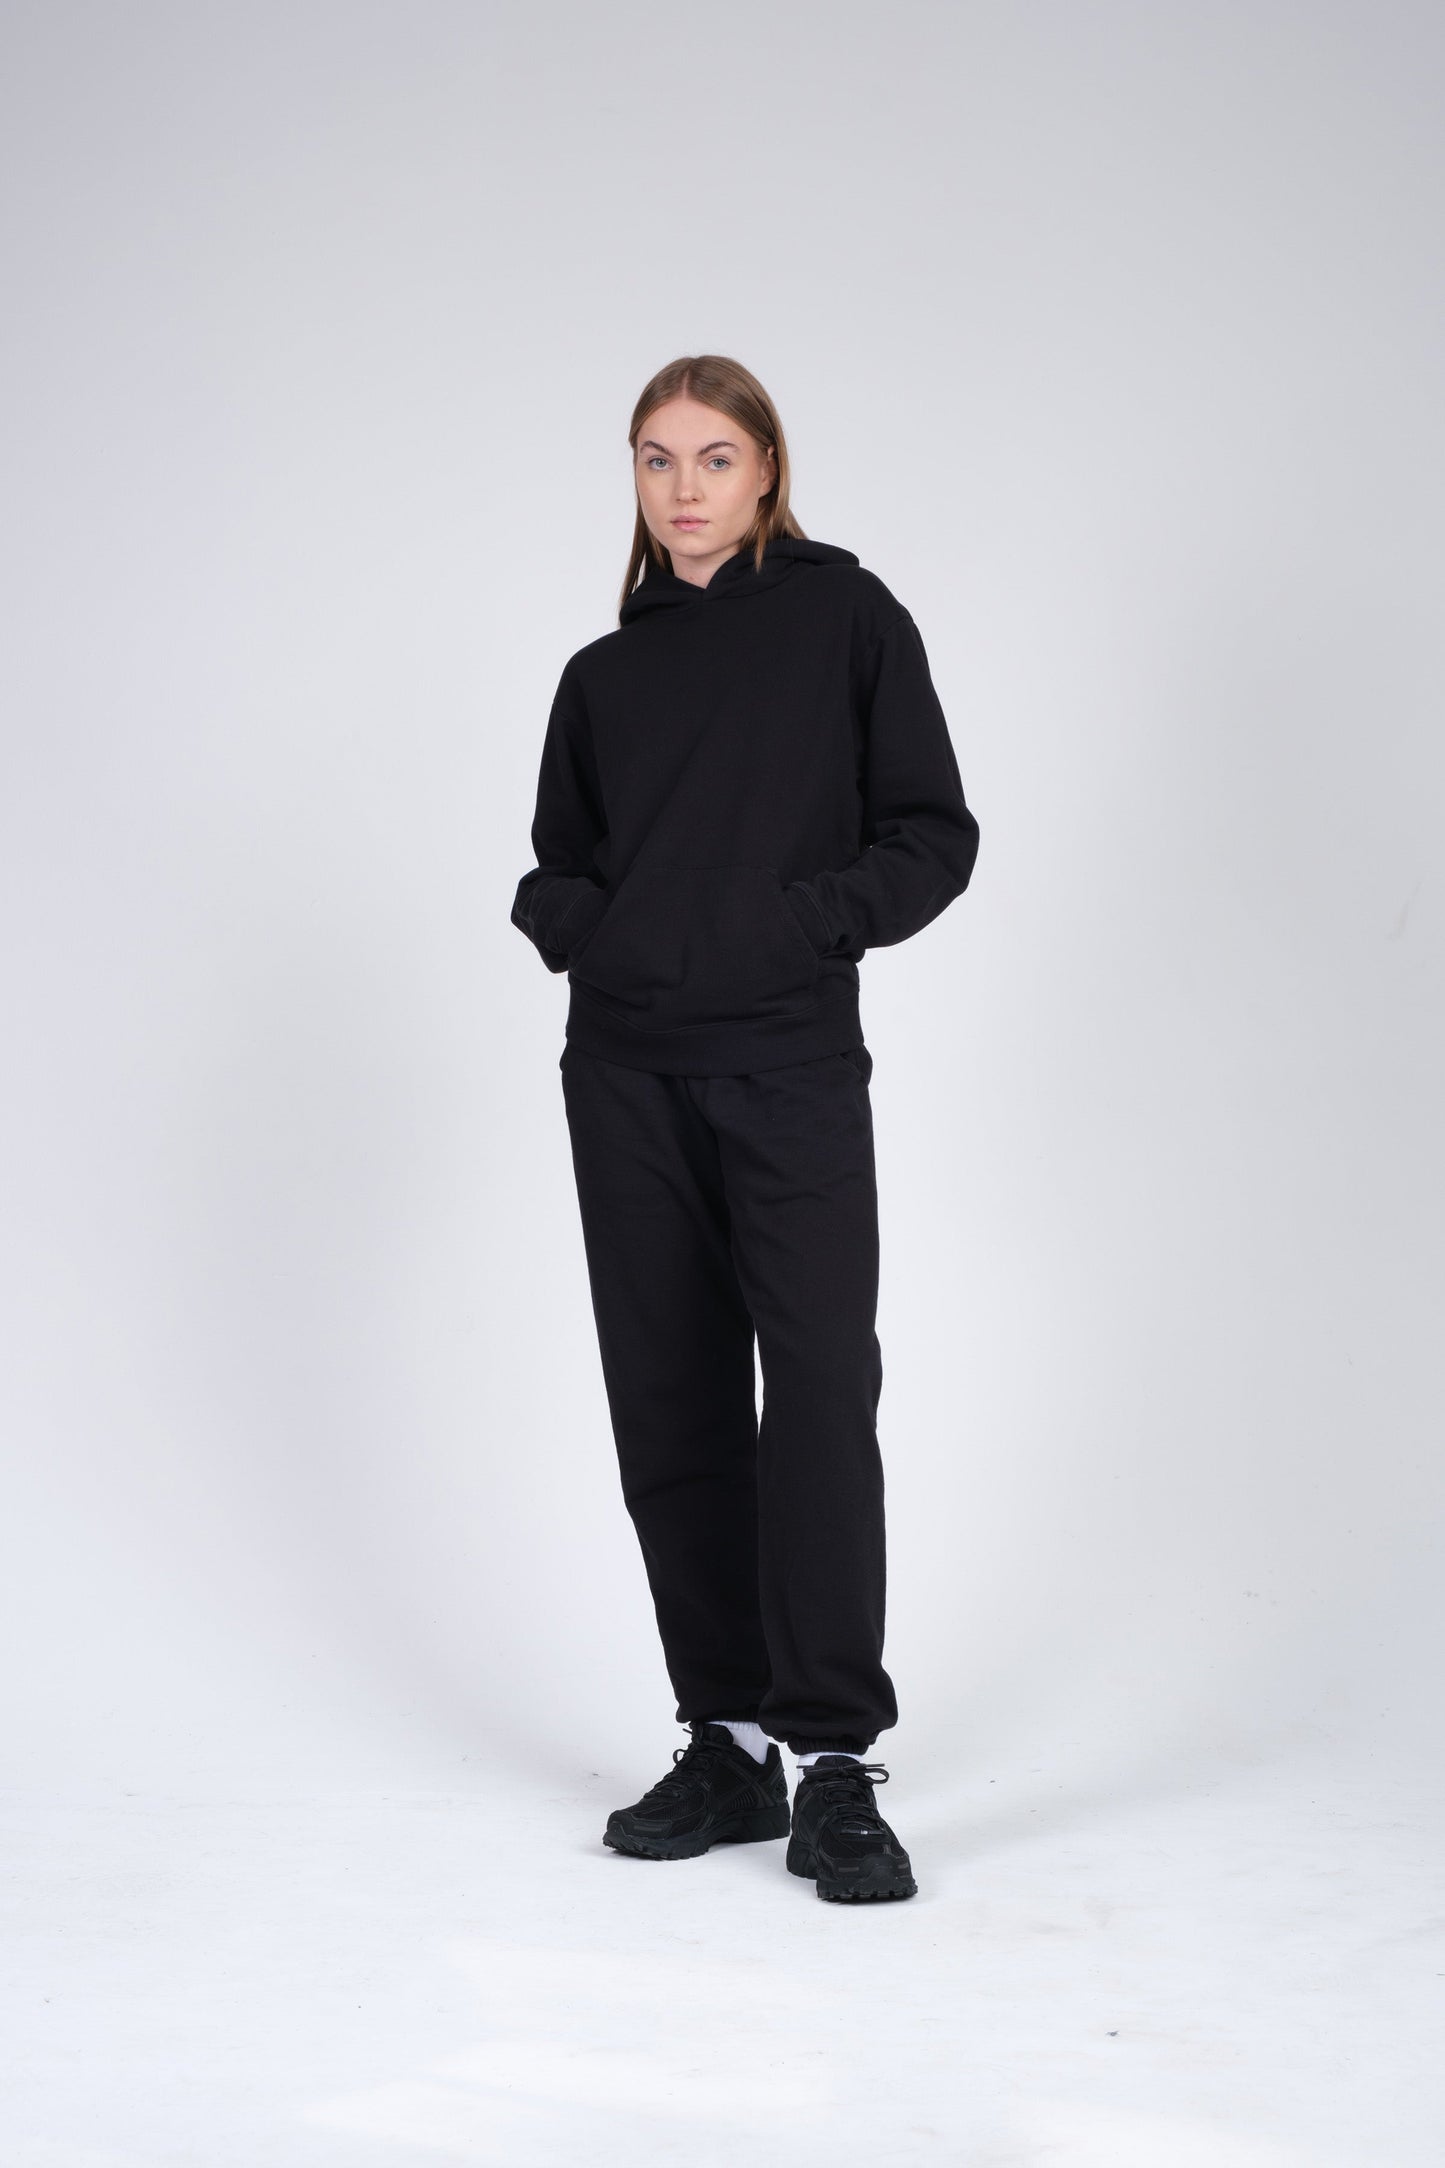 Sweatsuit for Women - Unisex Style